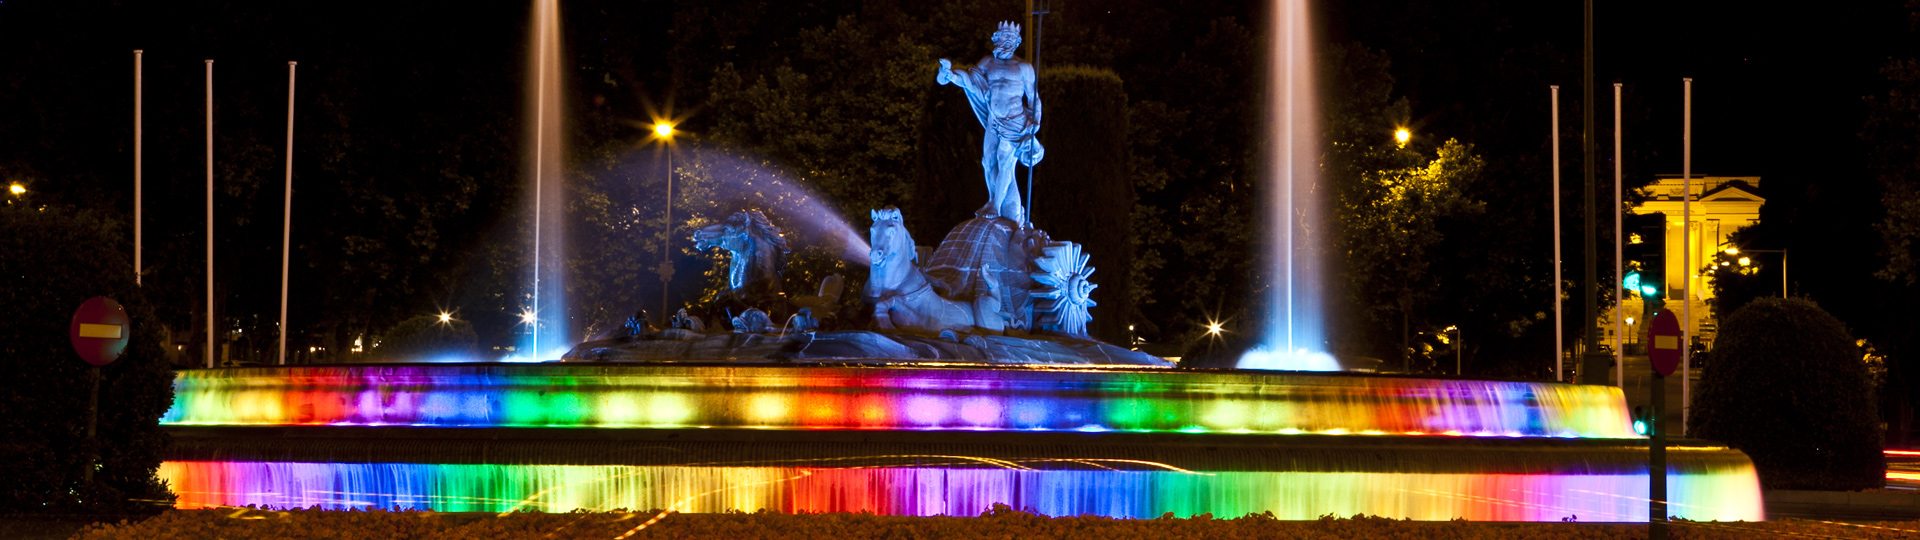 Fonte de Netuno de Madri decorada para a celebração do World Pride 